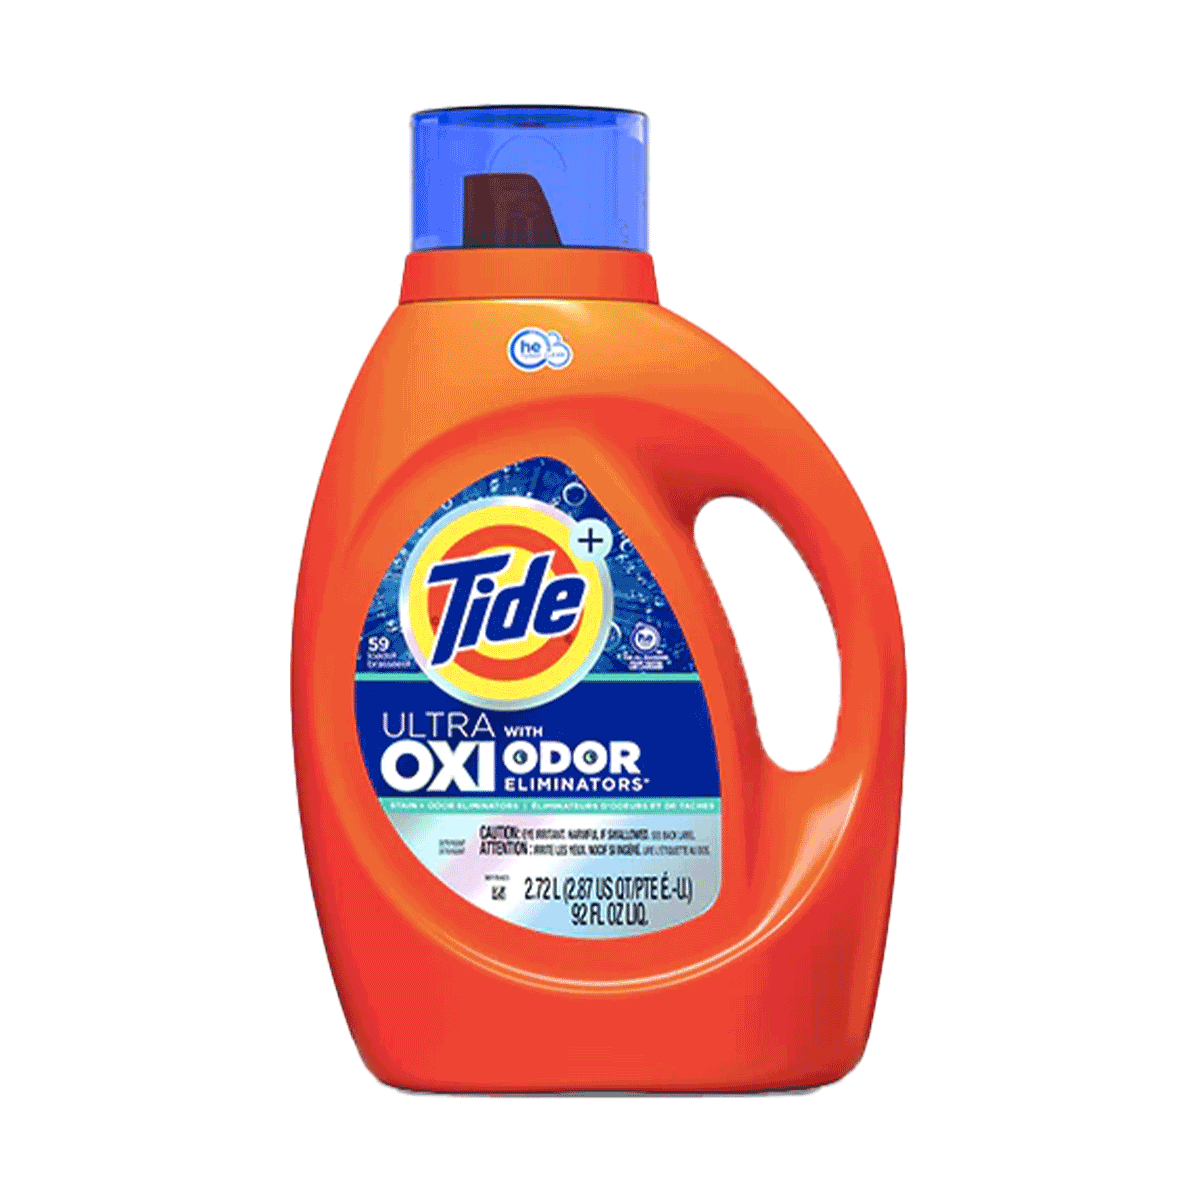 Detergente líquido concentrado para ropa Tide Ultra Oxi Odor Eliminator 2,72 litros